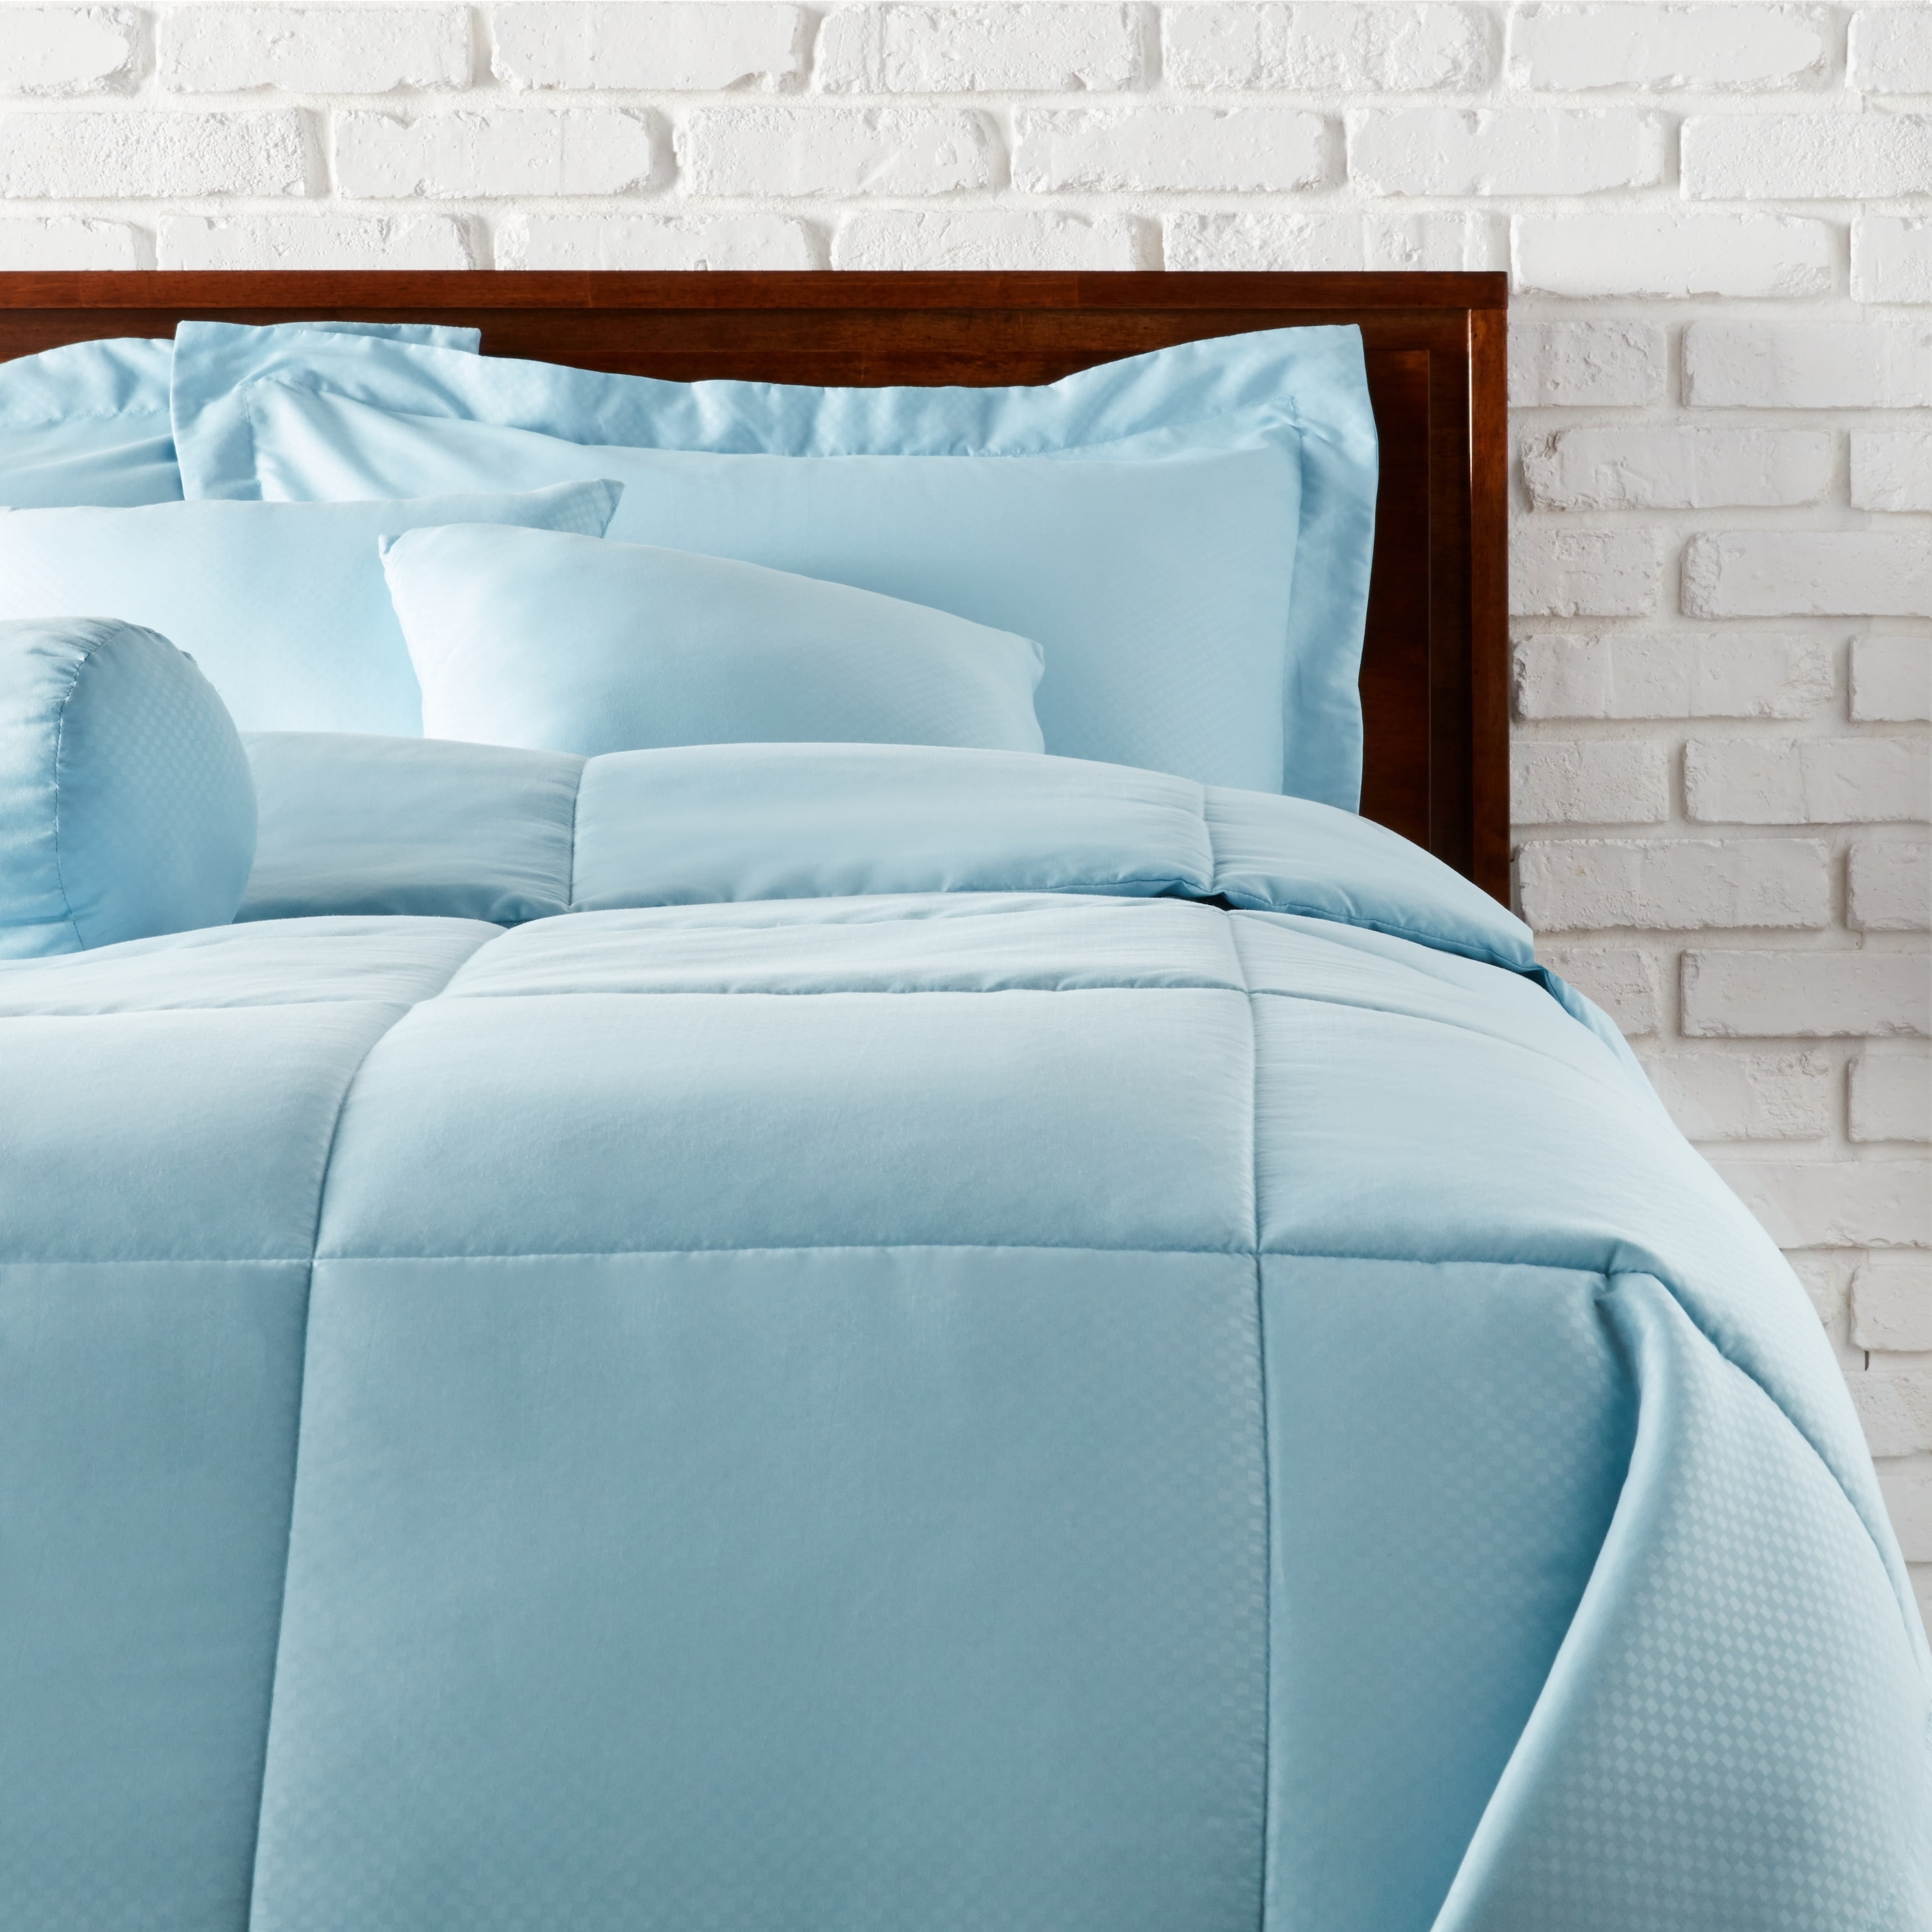 The Beatles Queen Size Microfiber 7 Piece Comforter Bed Sheet Set Bedding New 